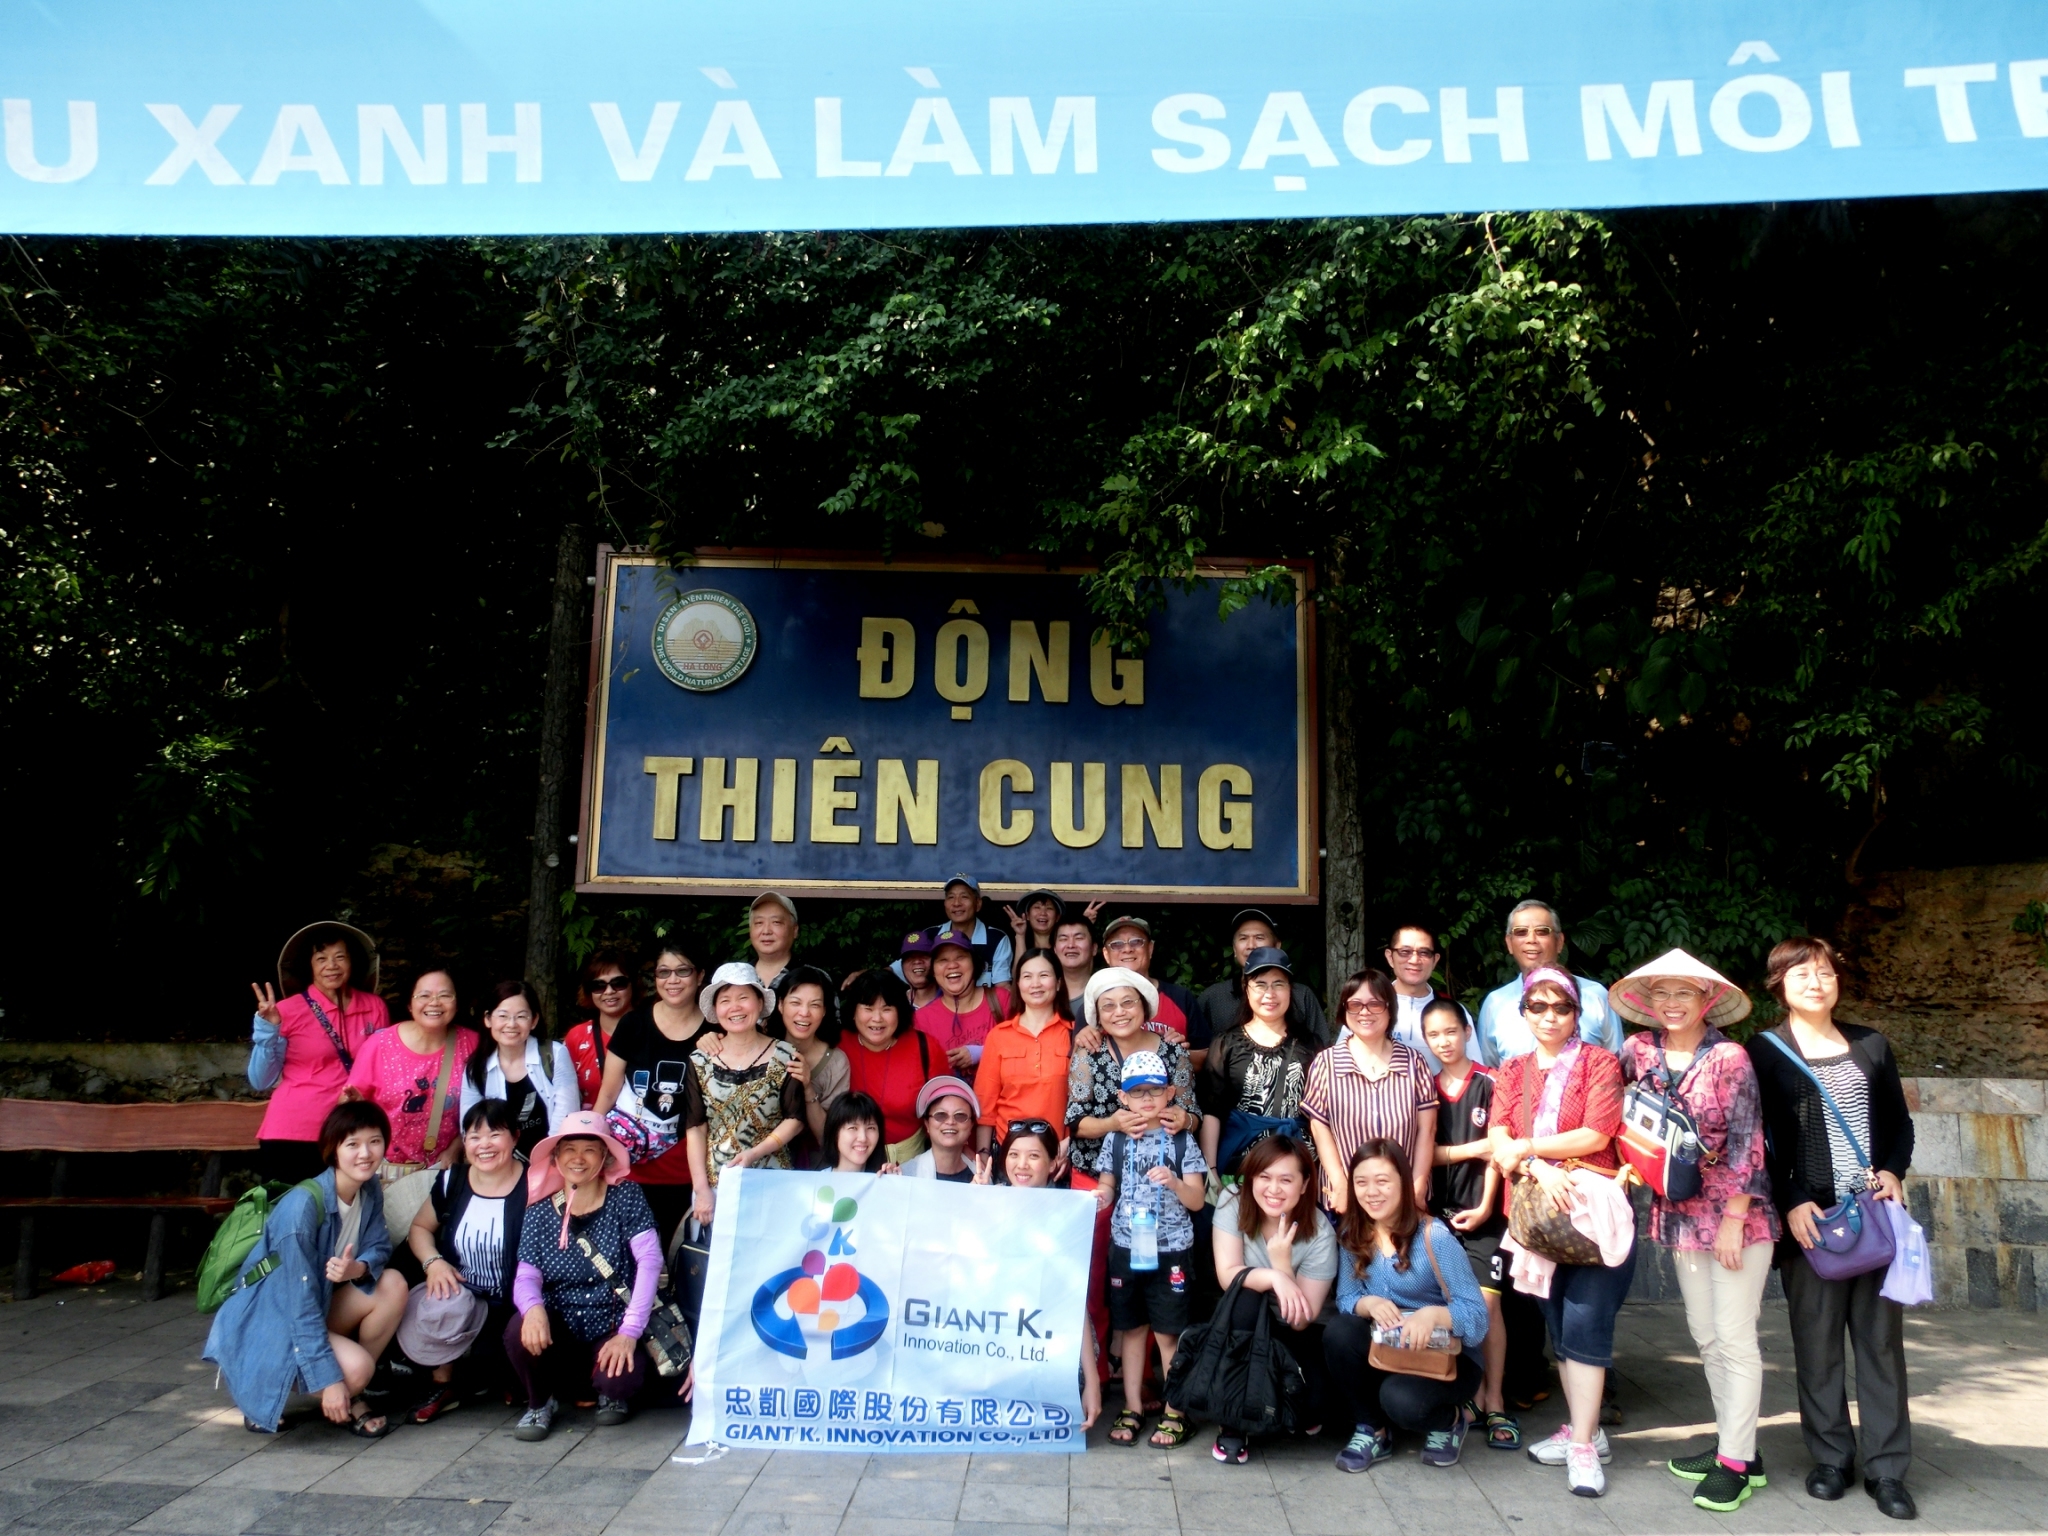 Giant K. 2016 Vietnam Company trip